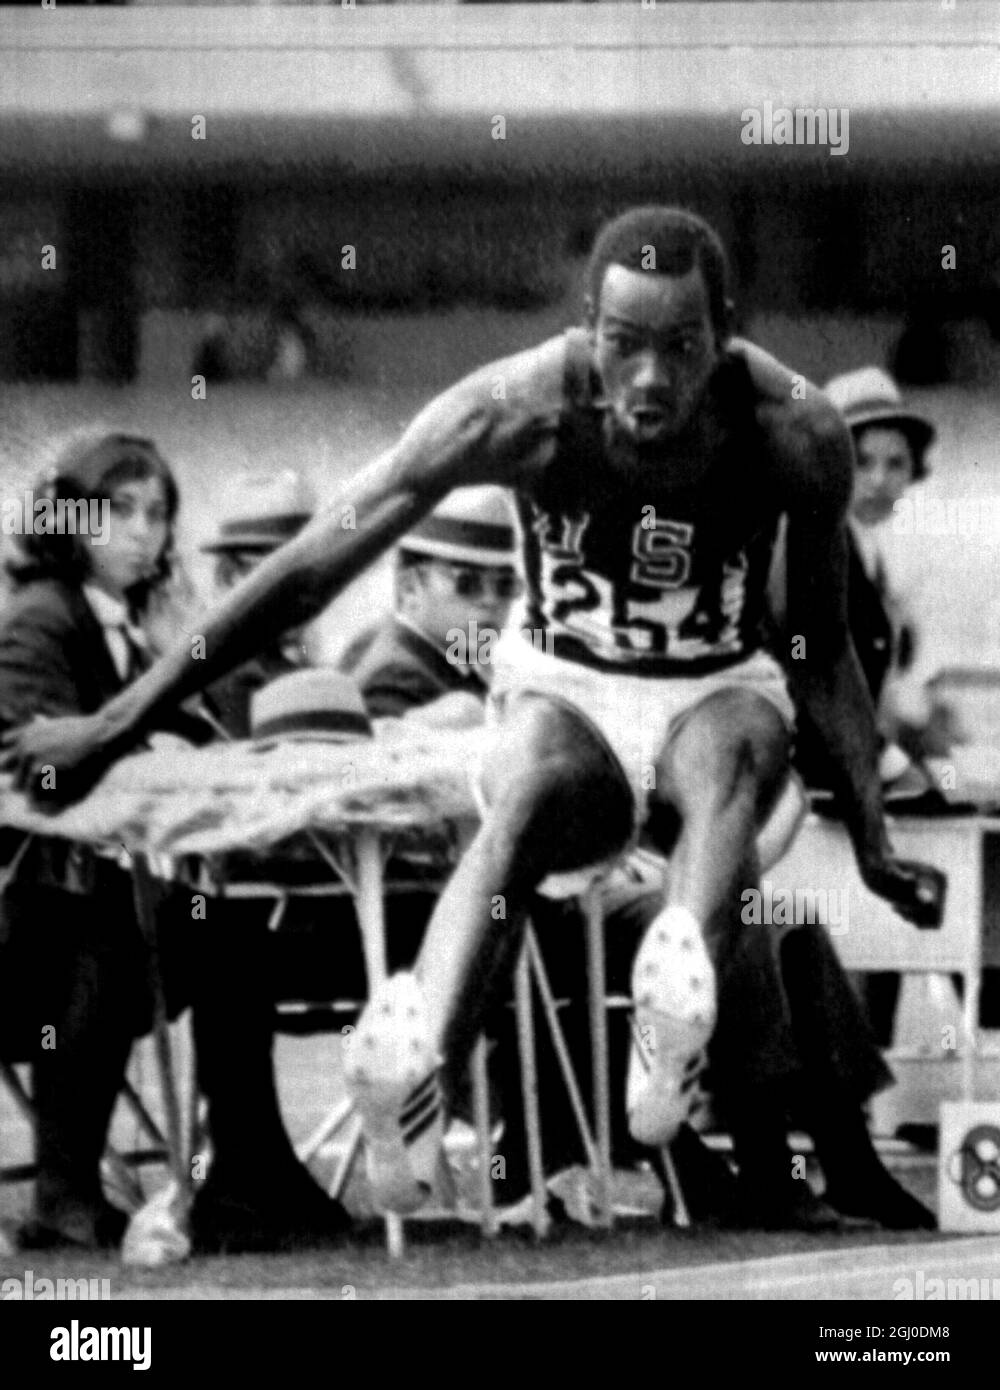 Olimpiadi del 1968, Messico. Bob Beamon degli Stati Uniti in azione durante l'evento maschile di salto lungo in cui ha frantumato il record mondiale di più di due piedi, in un salto di 29 piedi 2 & 1-2 pollici per vincere una medaglia d'oro olimpica. 18 ottobre 1968. Foto Stock